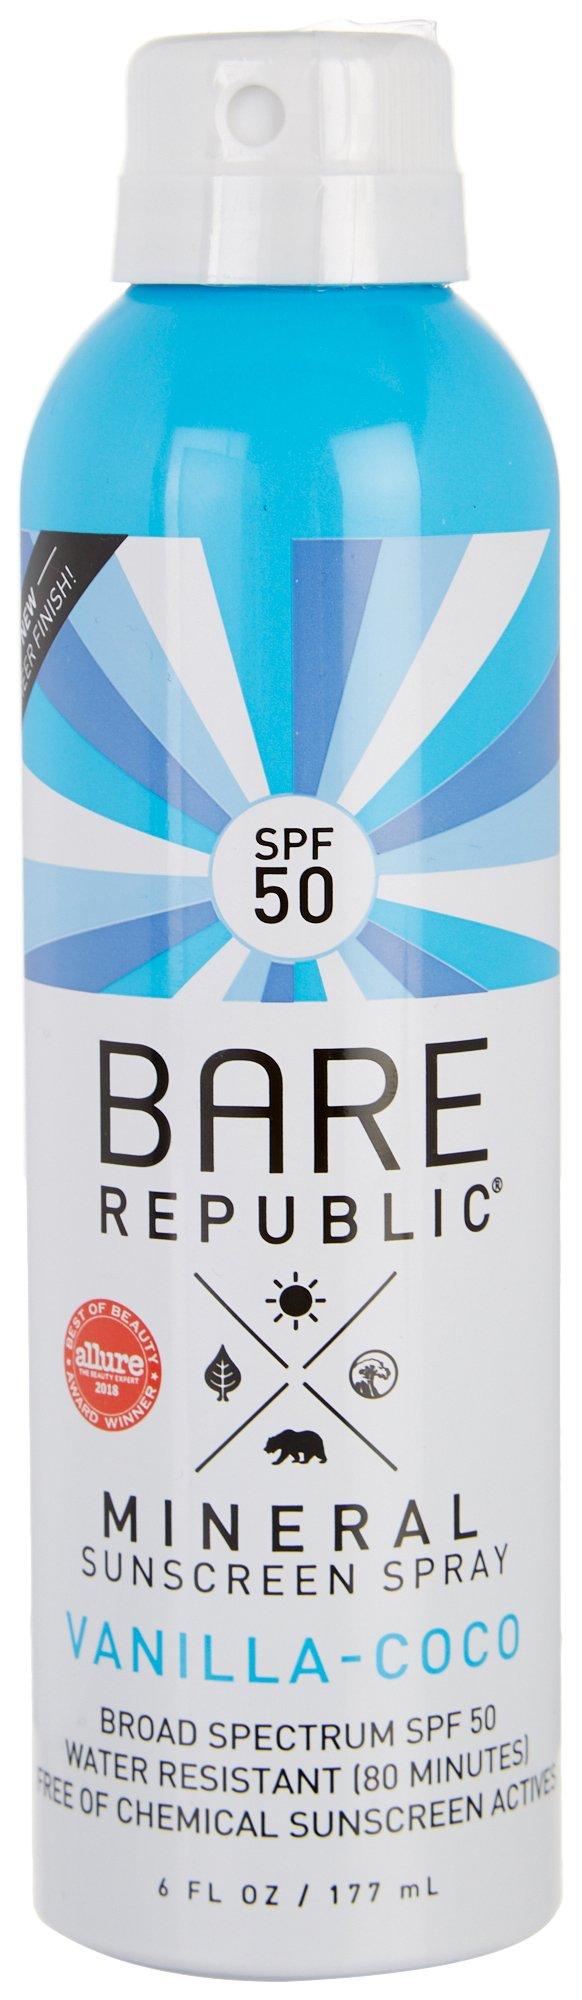 Bare Republic Vanilla Coco SPF 50 Mineral Sunscreen Spray